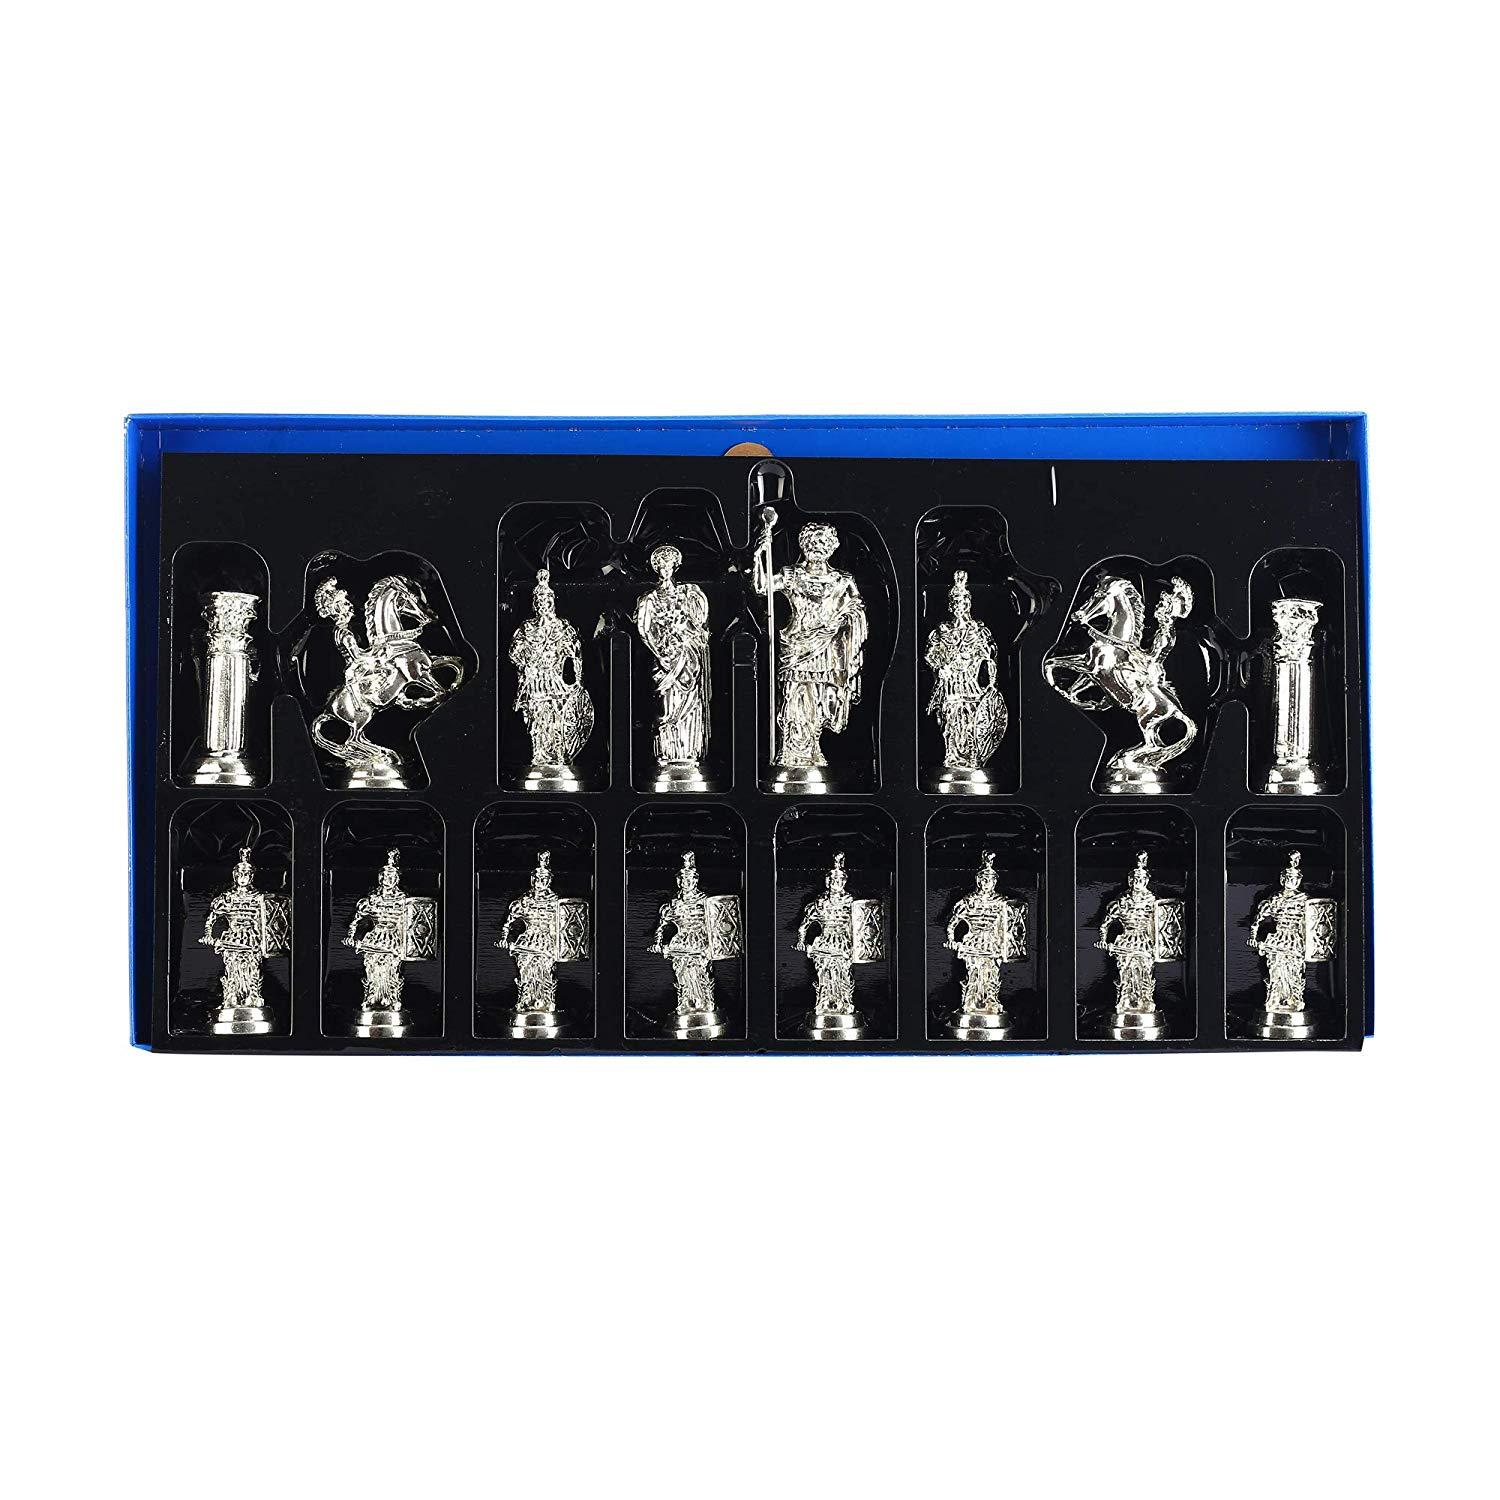 Изображение товара: Металлический Шахматный набор, римские фигурки, предметы ручной работы, шахматная доска из натурального массива дерева, оригинальный жемчуг на доске, хранение внутри короля 10 см